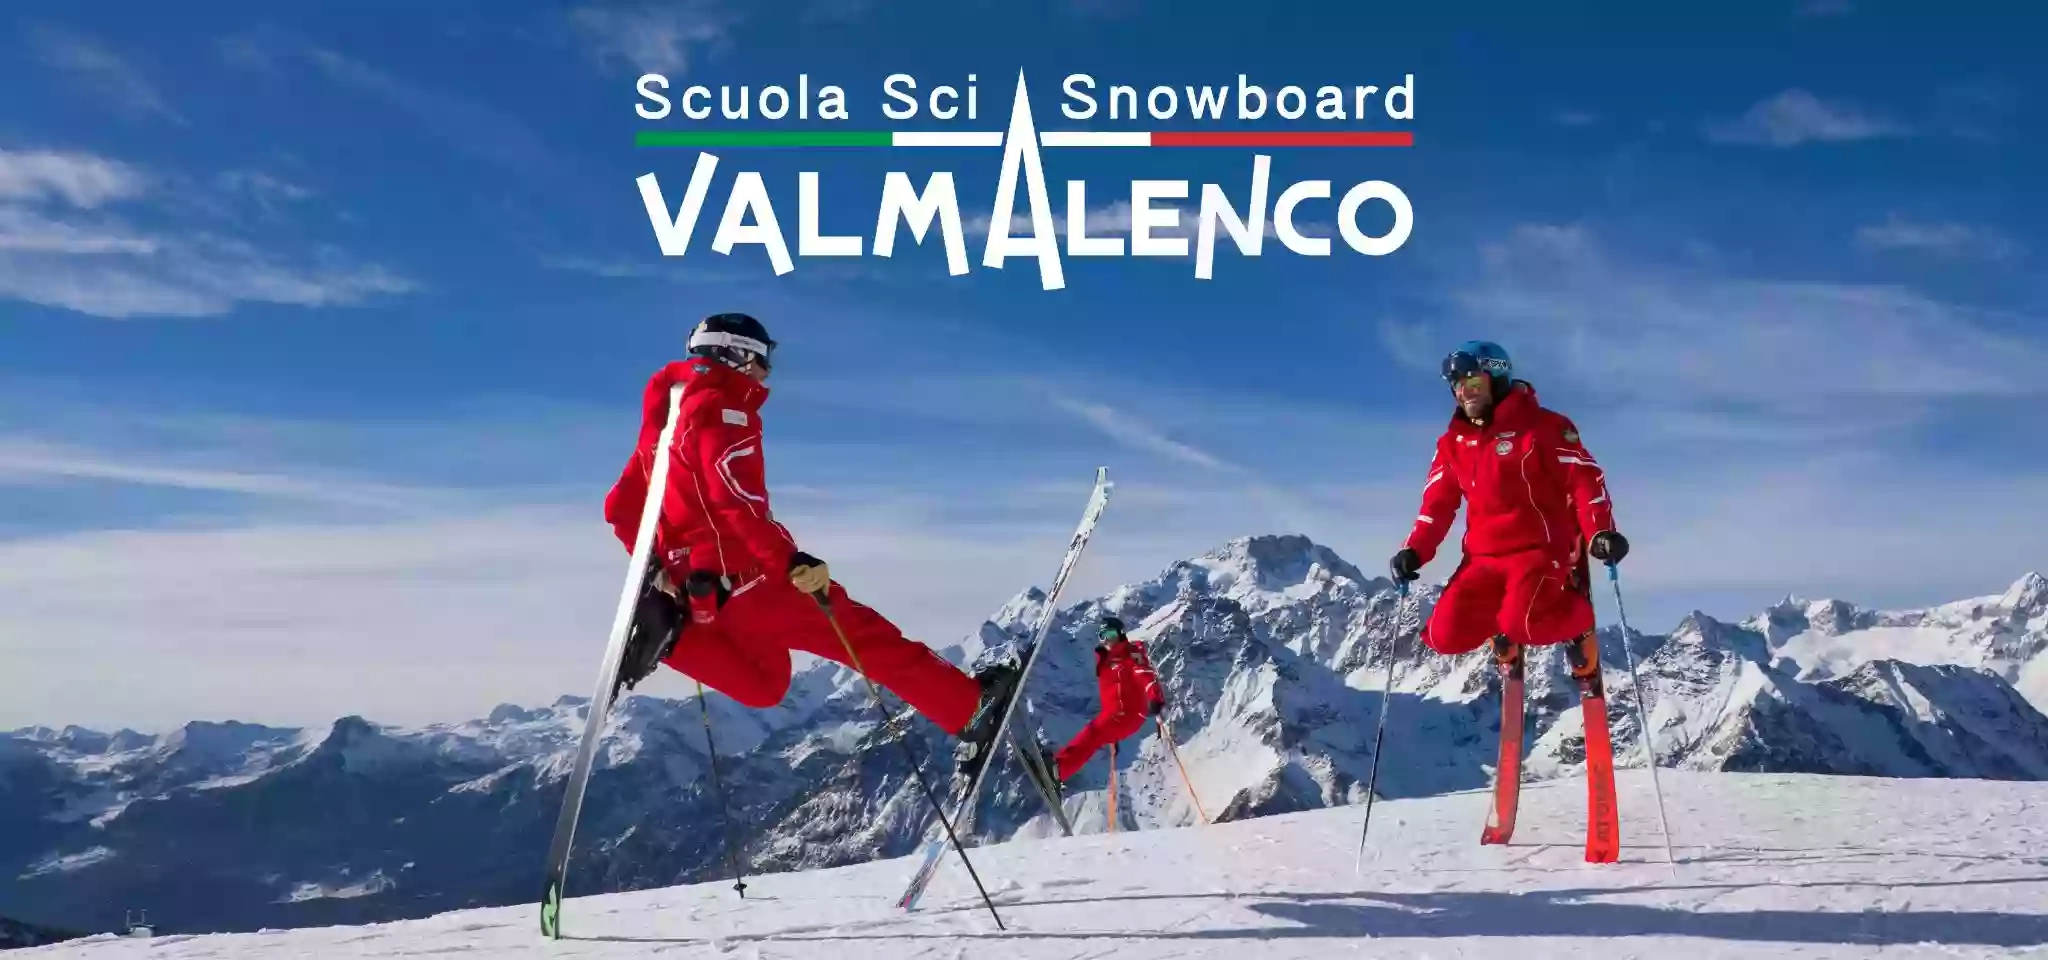 Scuola Sci e Snowboard Valmalenco